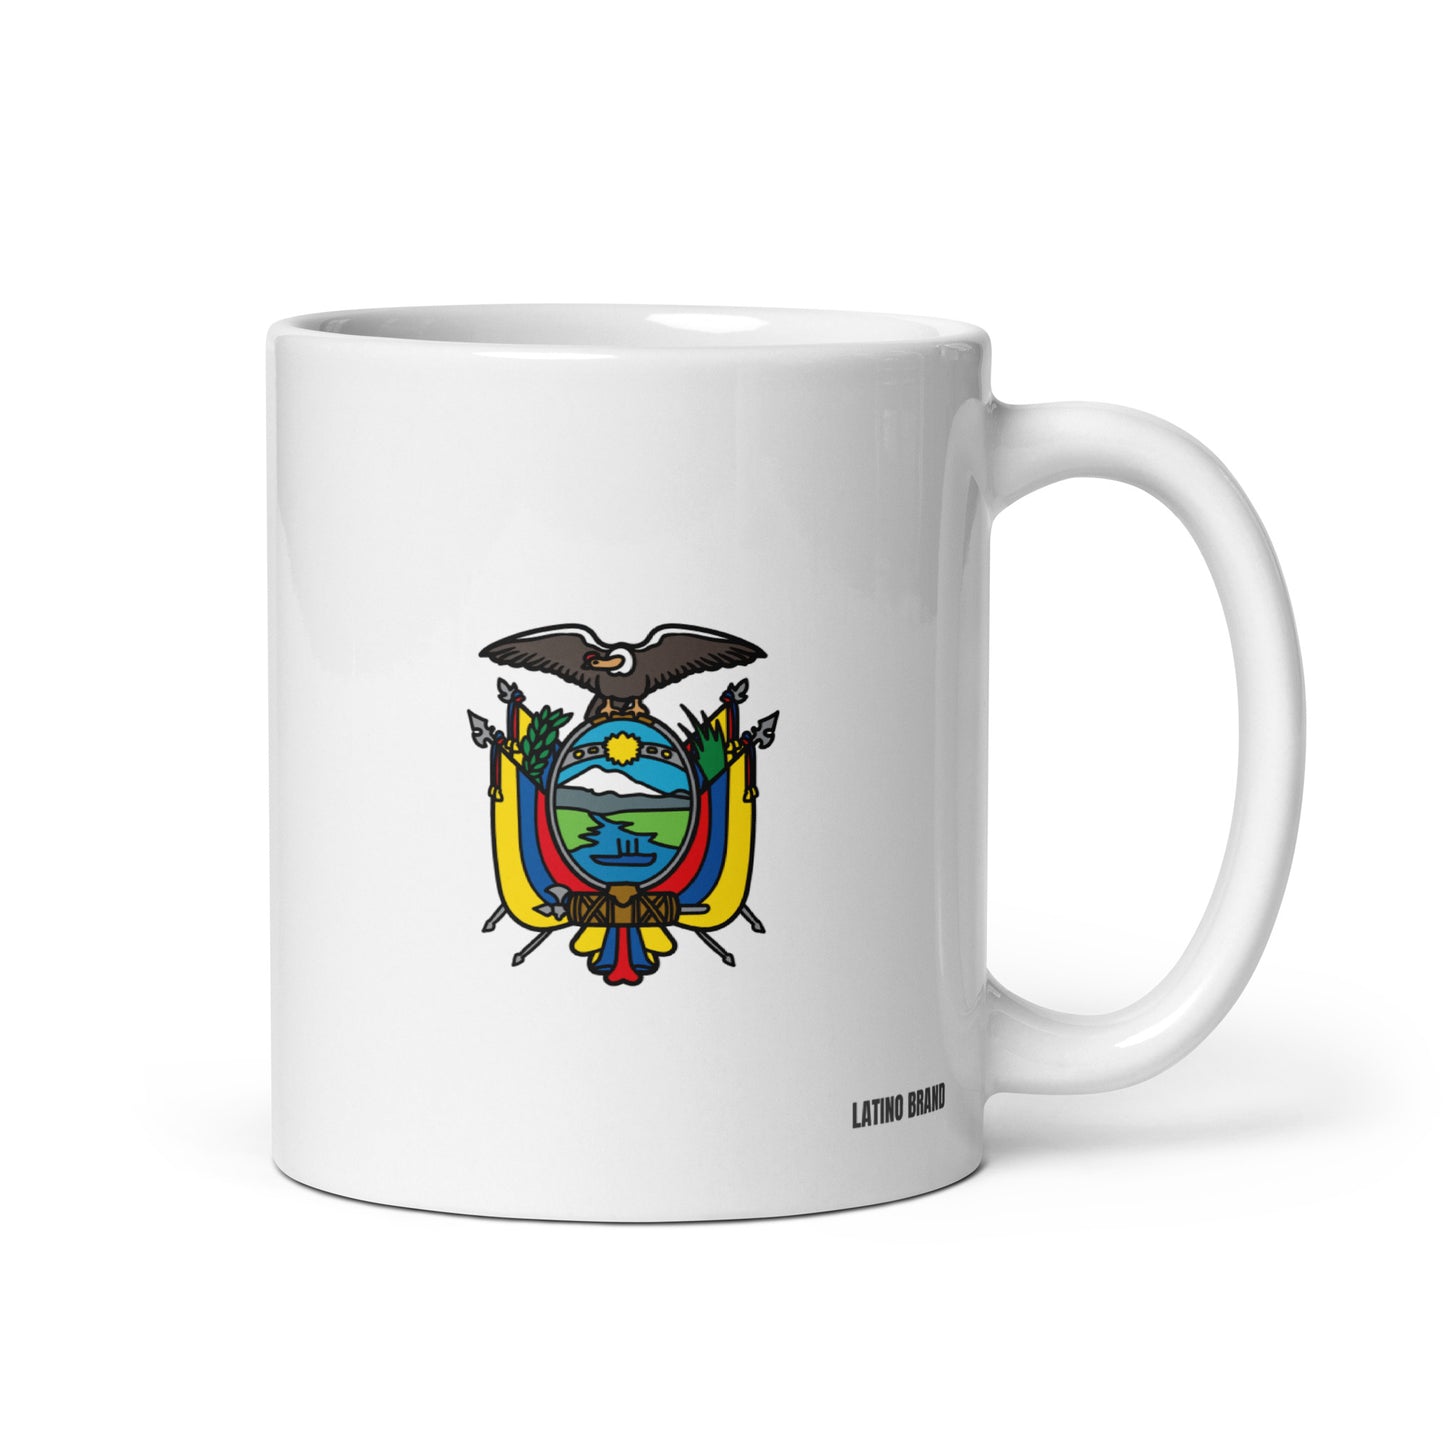 Taza de café 🇪🇨 Ecuador (Escudo y Bandera)